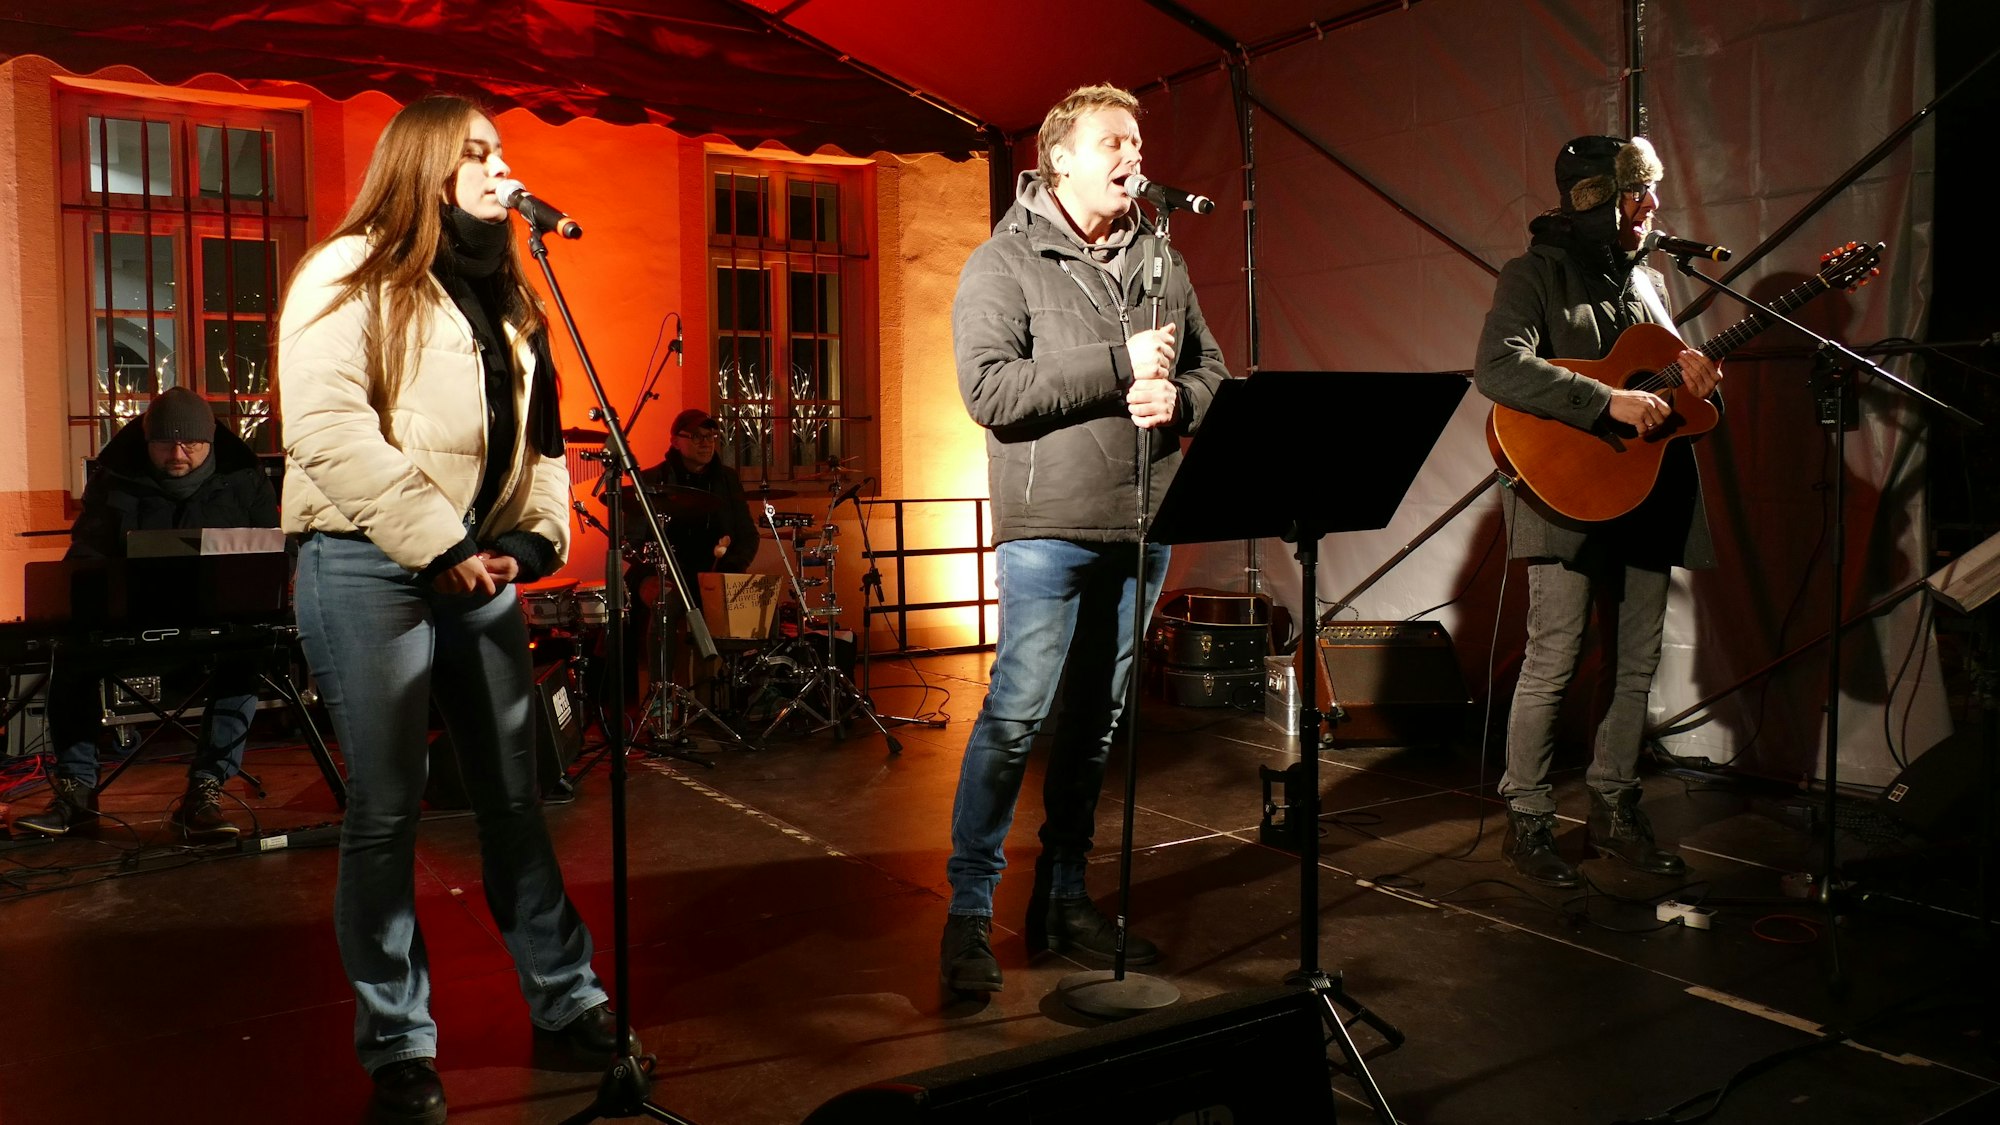 Da fehlten nur noch die Weihnachtsmützen: Mirko Bäumer und die Lustigen Musikanten verbreiteten Weihnachtsstimmung.